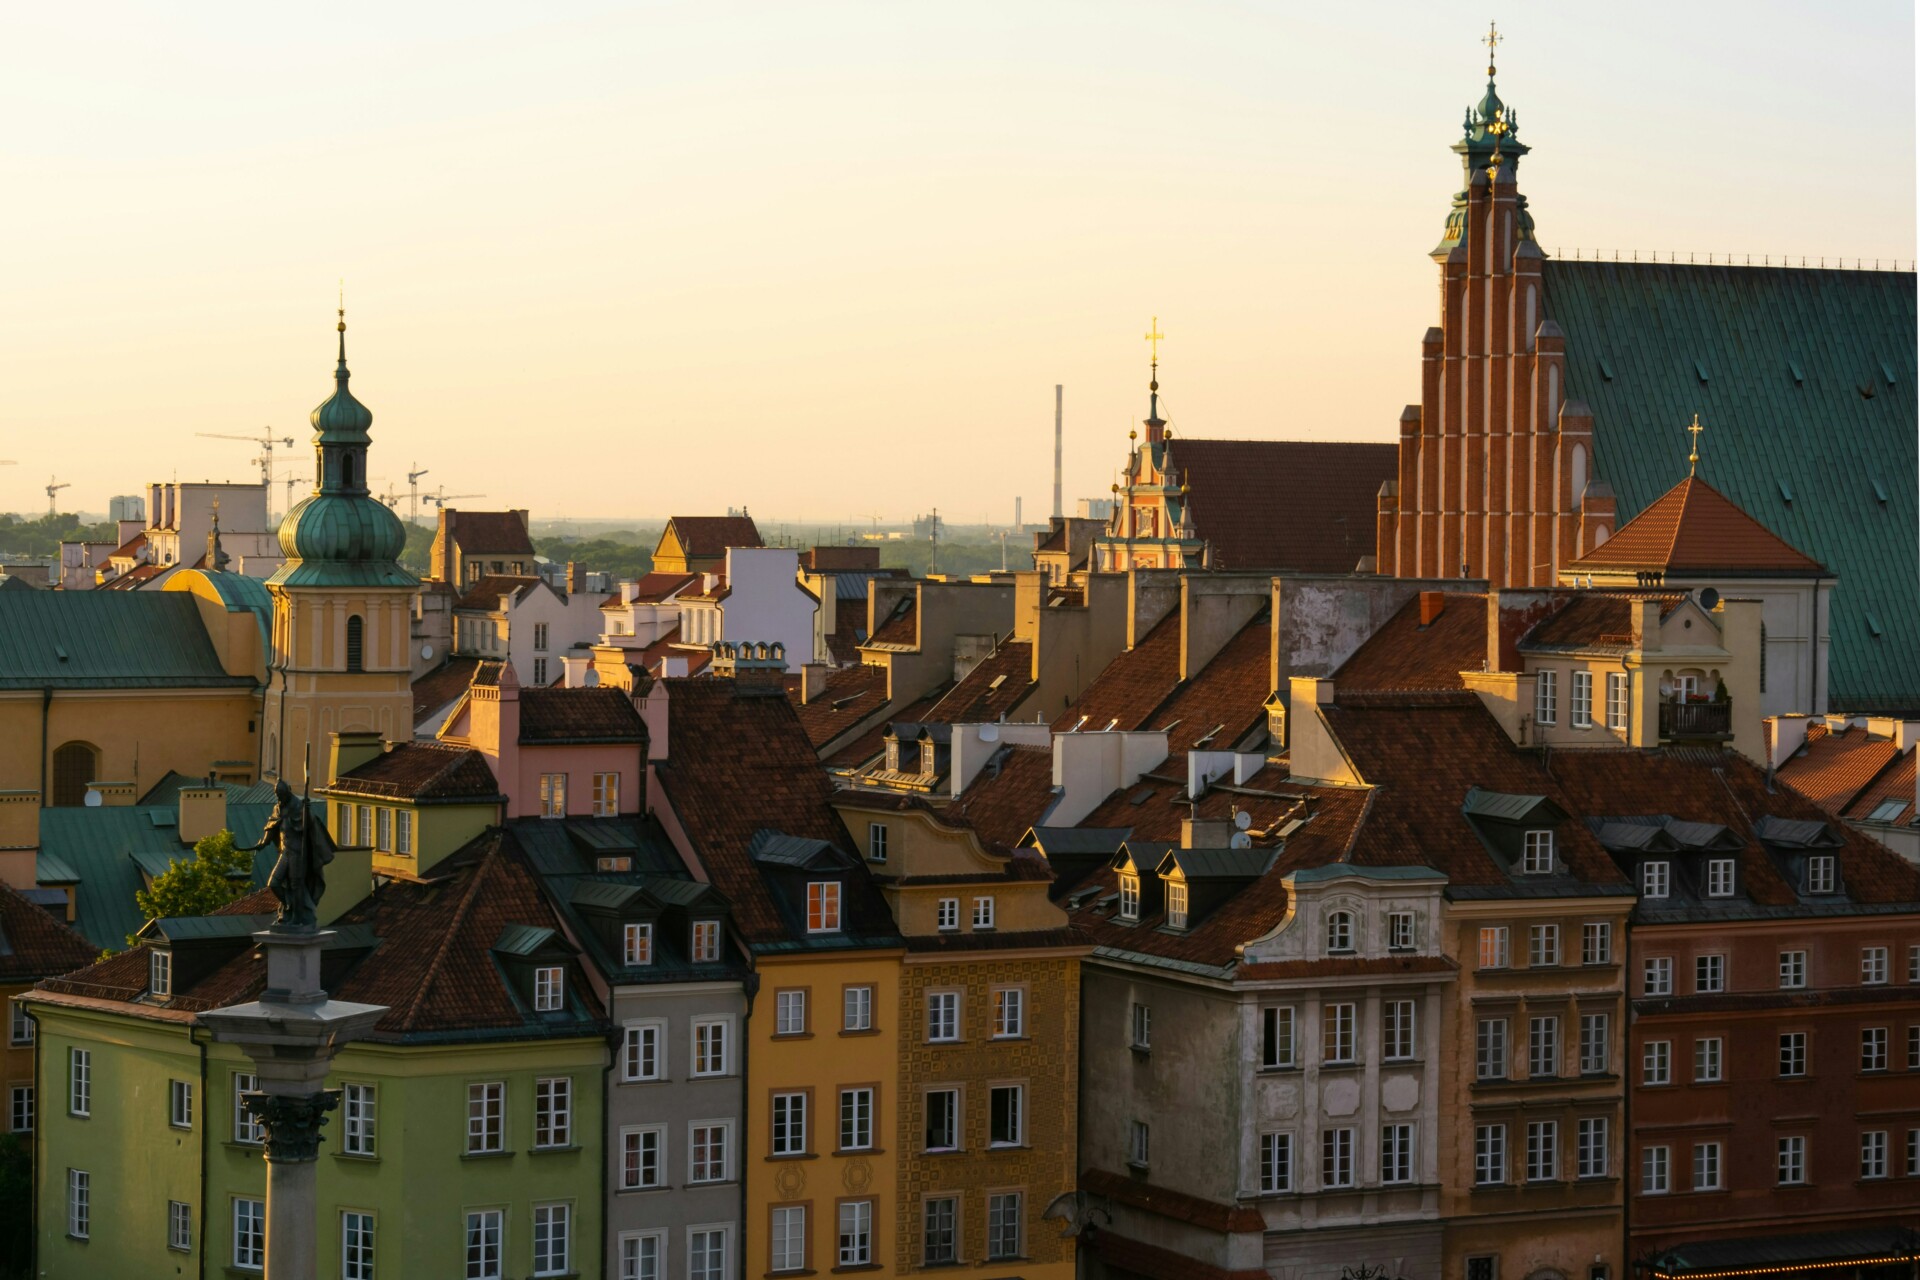 Blick auf die Dächer einer europäischen Altstadt bei Sonnenuntergang, mit historischen Gebäuden in verschiedenen warmen Farbtönen und einigen Kirchtürmen, die sich gegen den orange gefärbten Himmel abzeichnen.